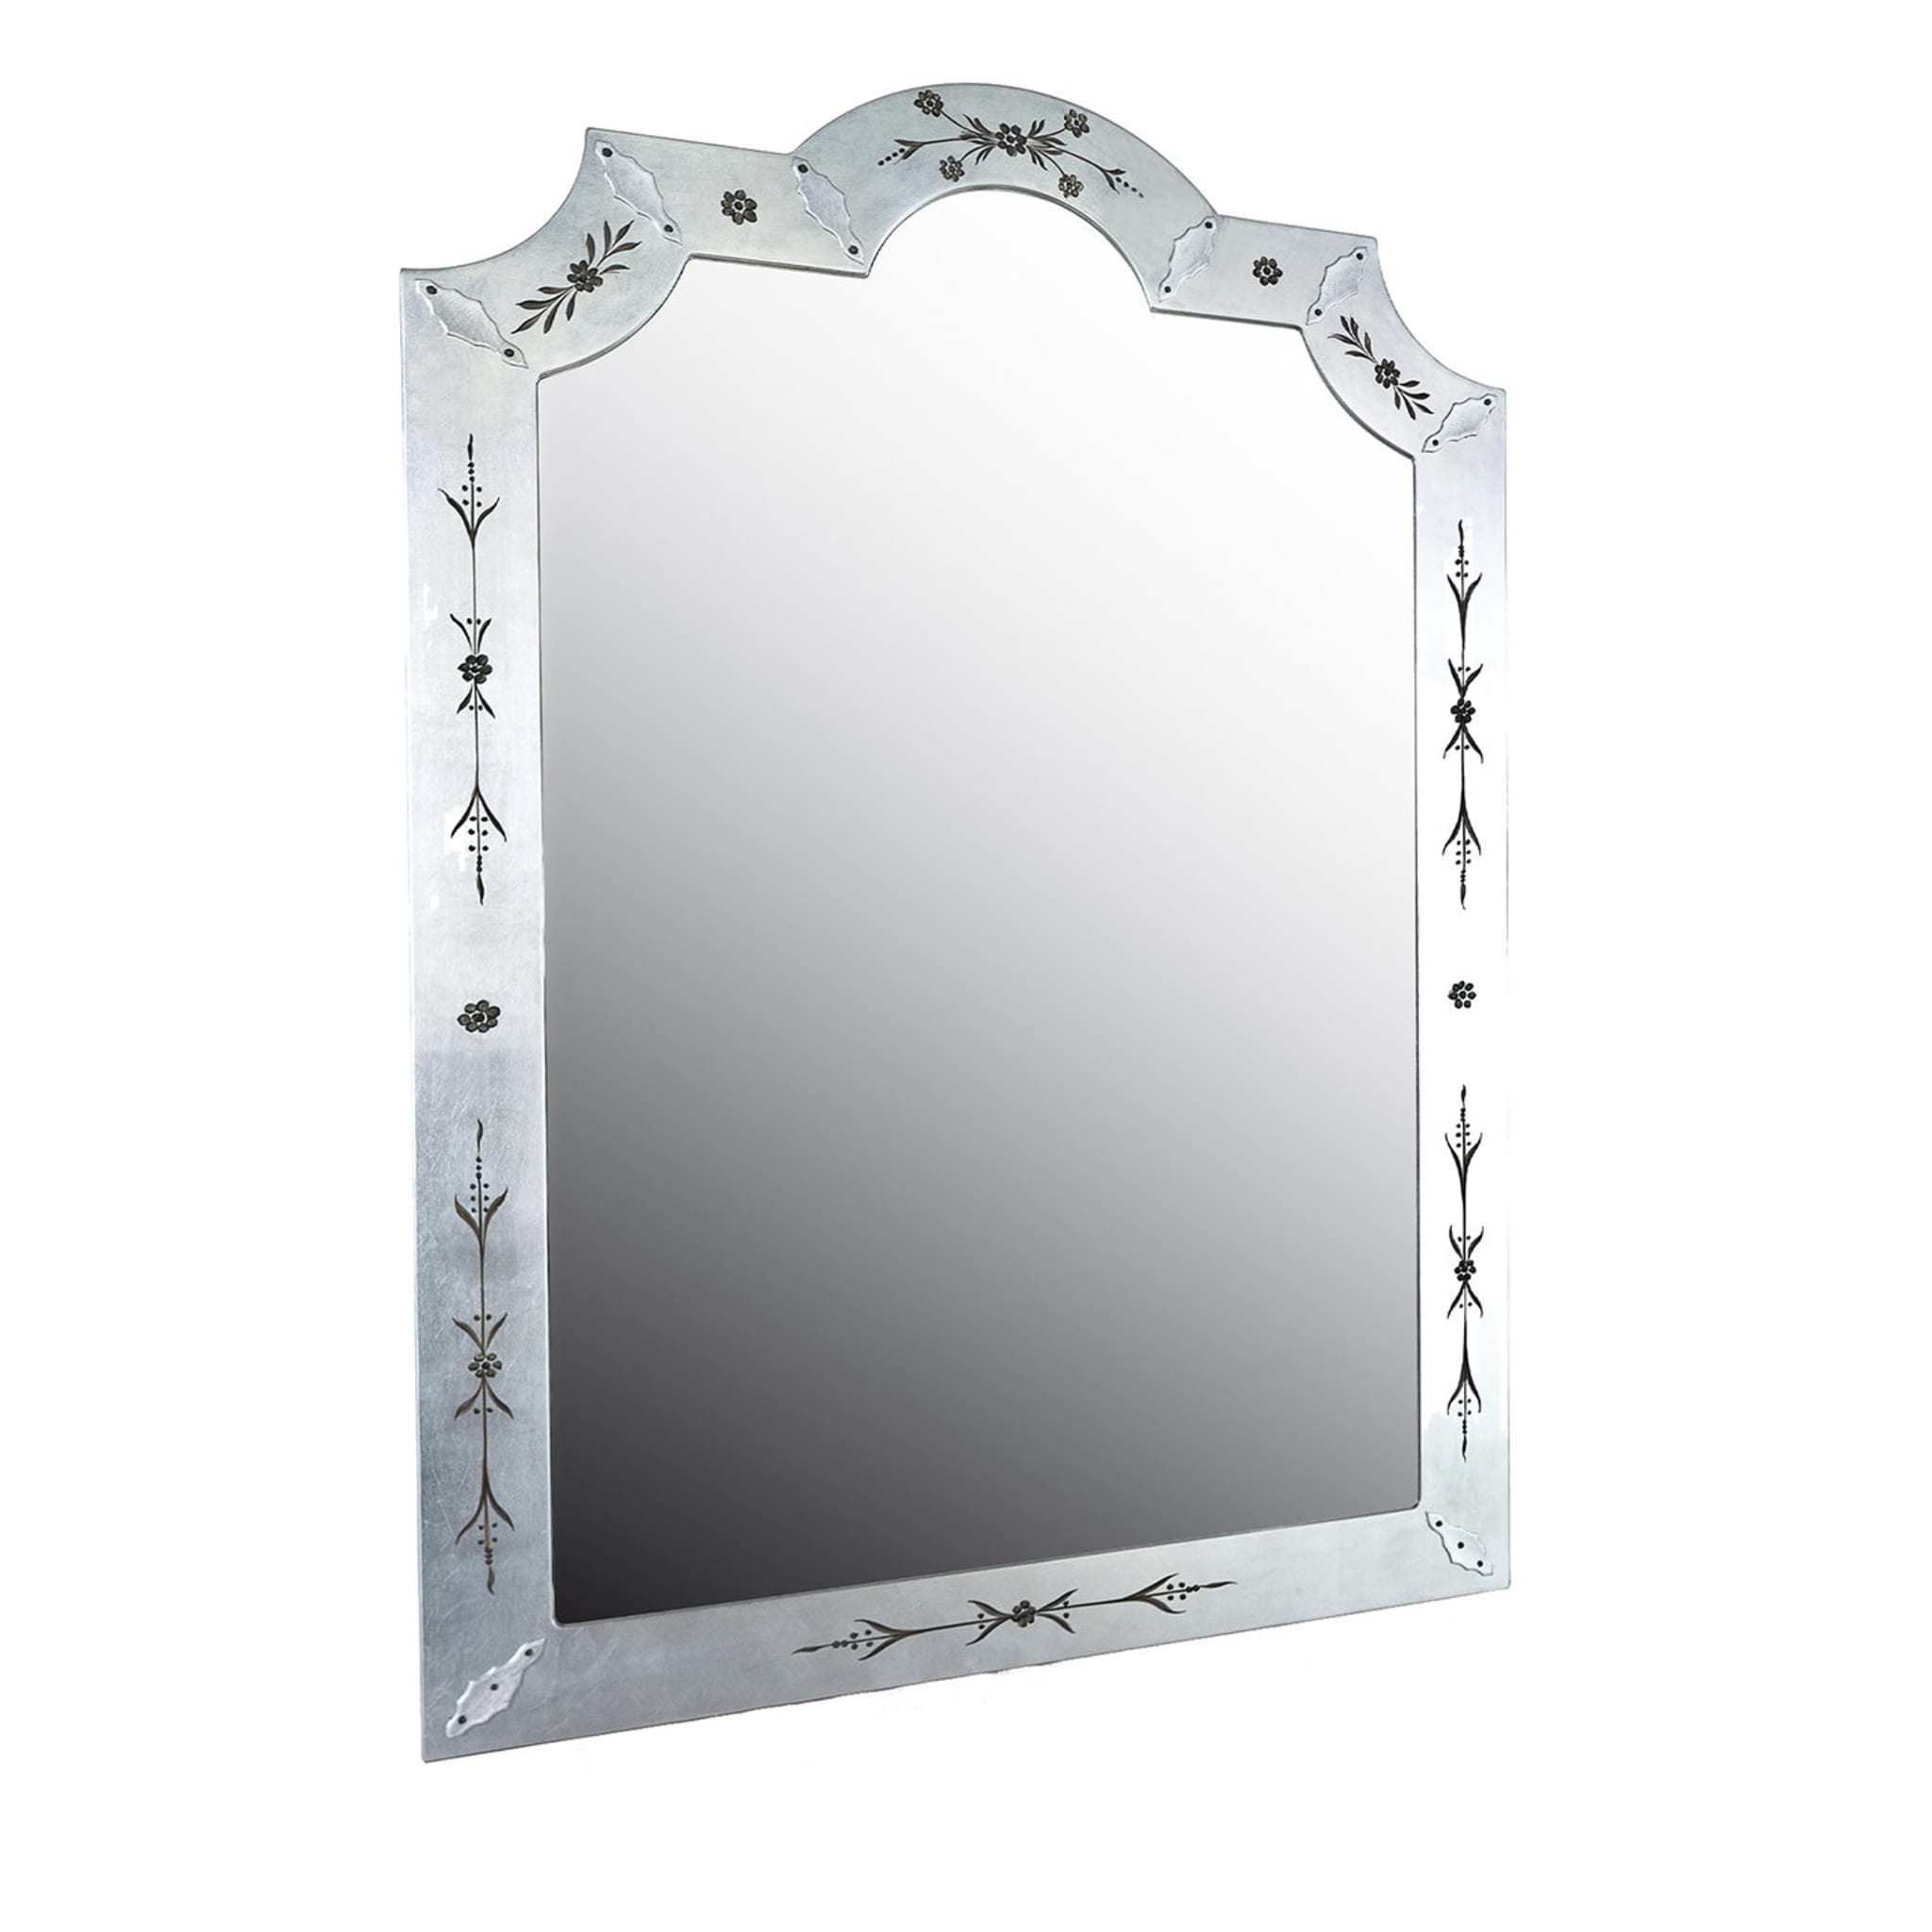 Specchio fiorito in foglia d'argento - Vista principale